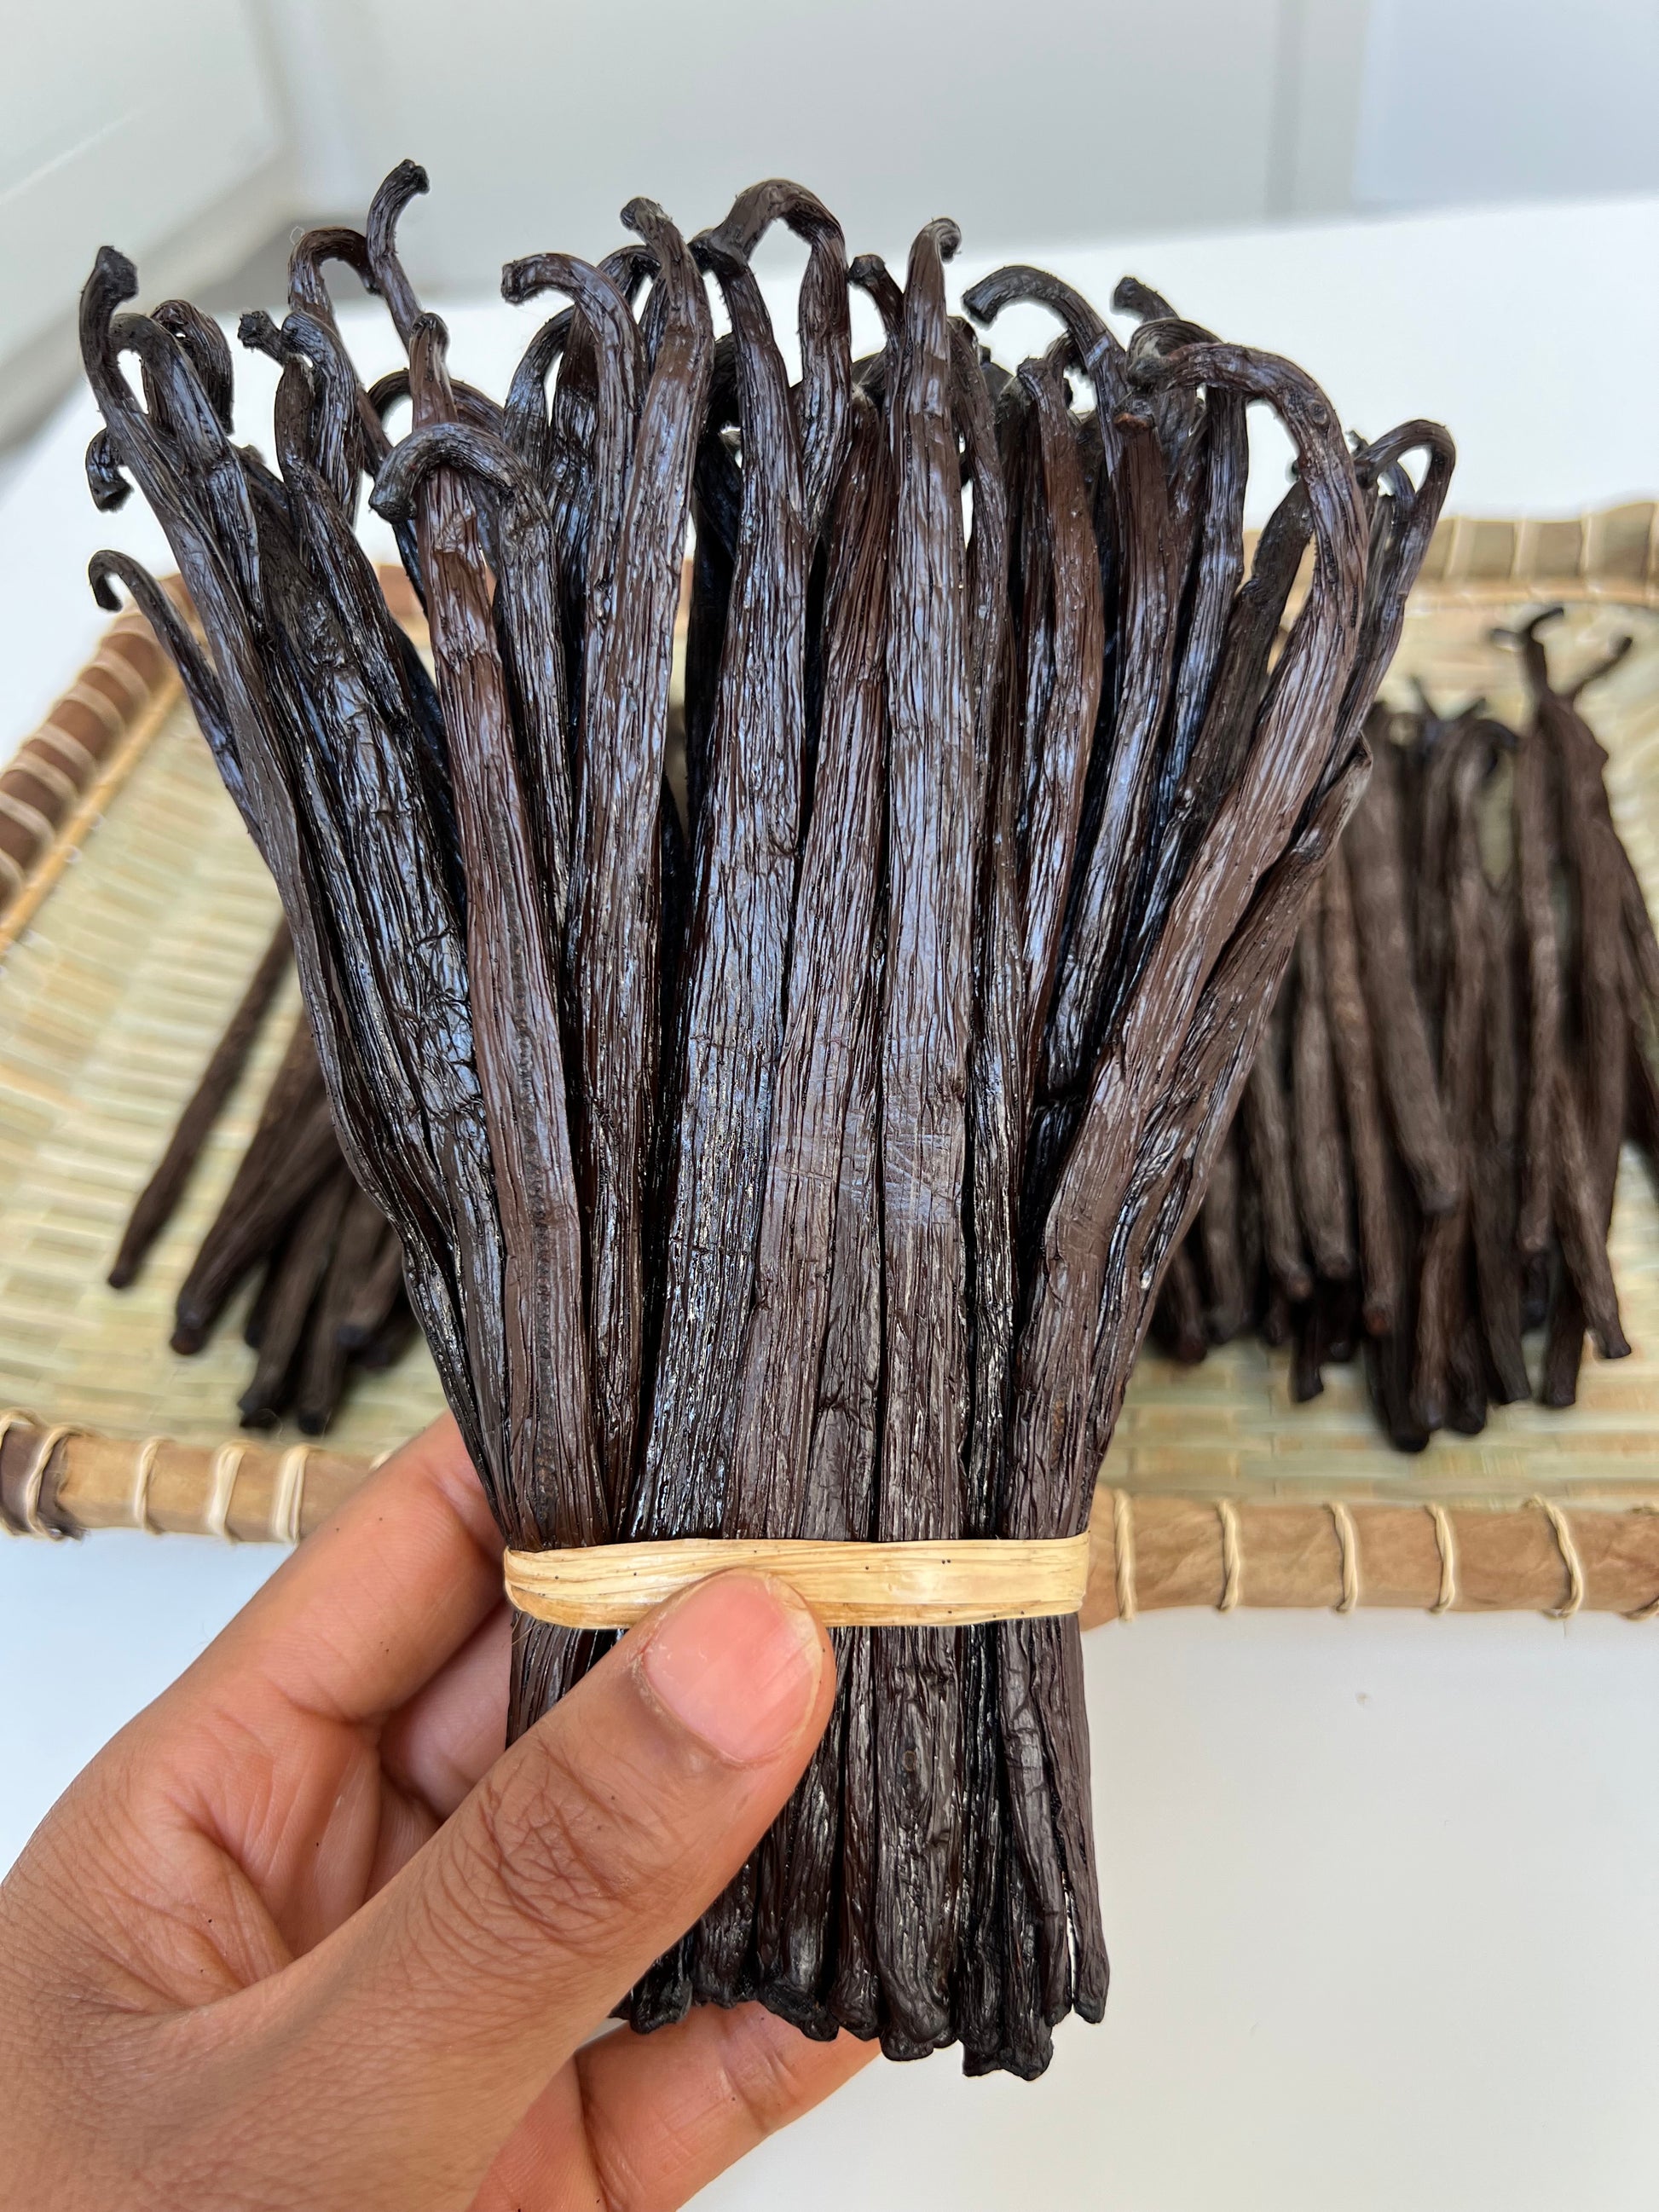 100g de gousses de Vanille Bourbon qualité Gourmet de Madagascar